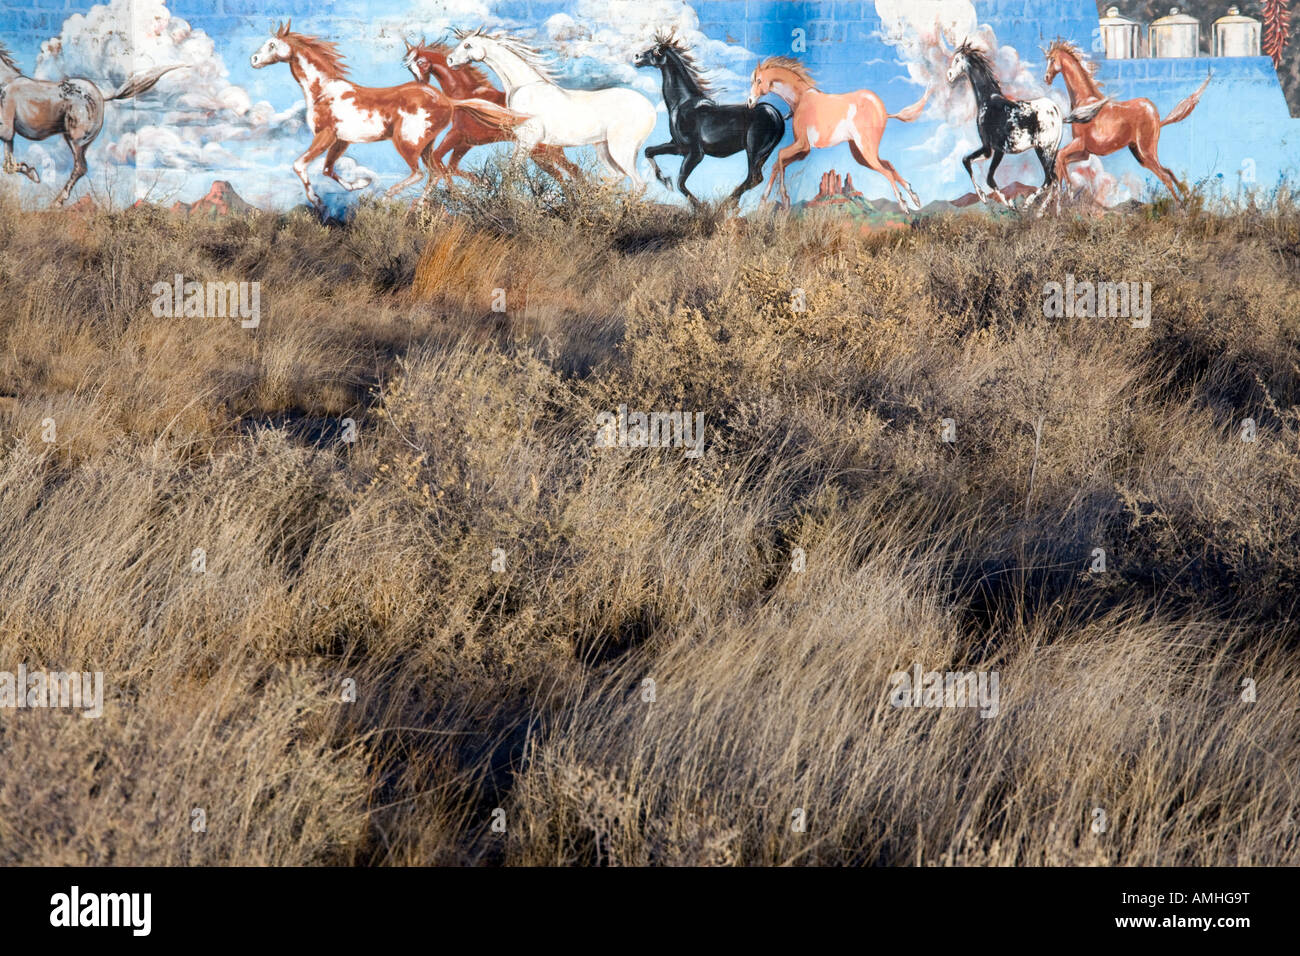 La peinture murale représentant des mustangs sauvages près d'Albuquerque au Nouveau Mexique Banque D'Images